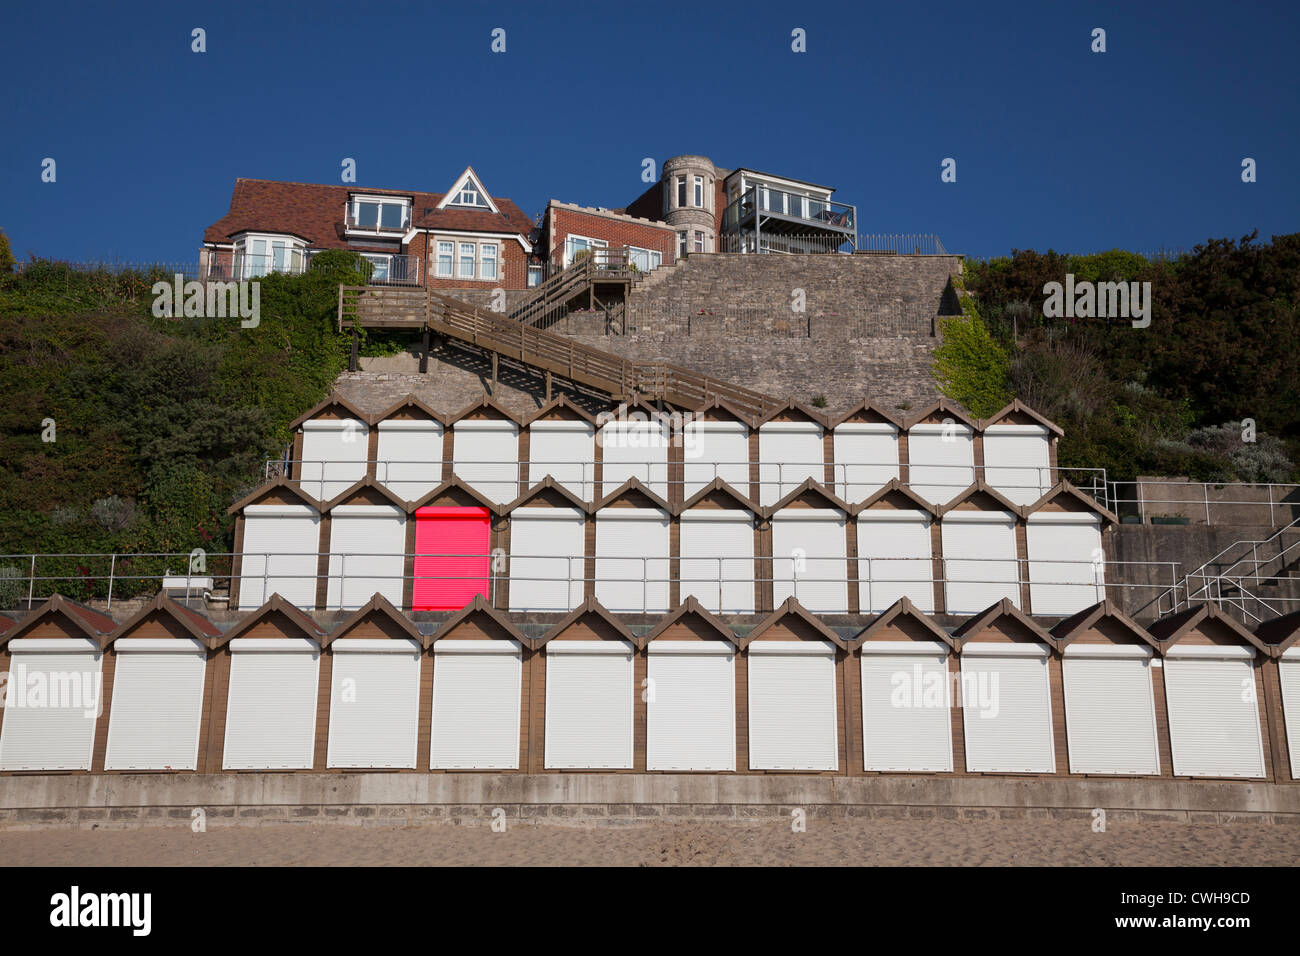 Tre livelli di cabine sulla spiaggia, con il rullo bianco otturatore porte e una porta rossa (creata digitalmente) Foto Stock